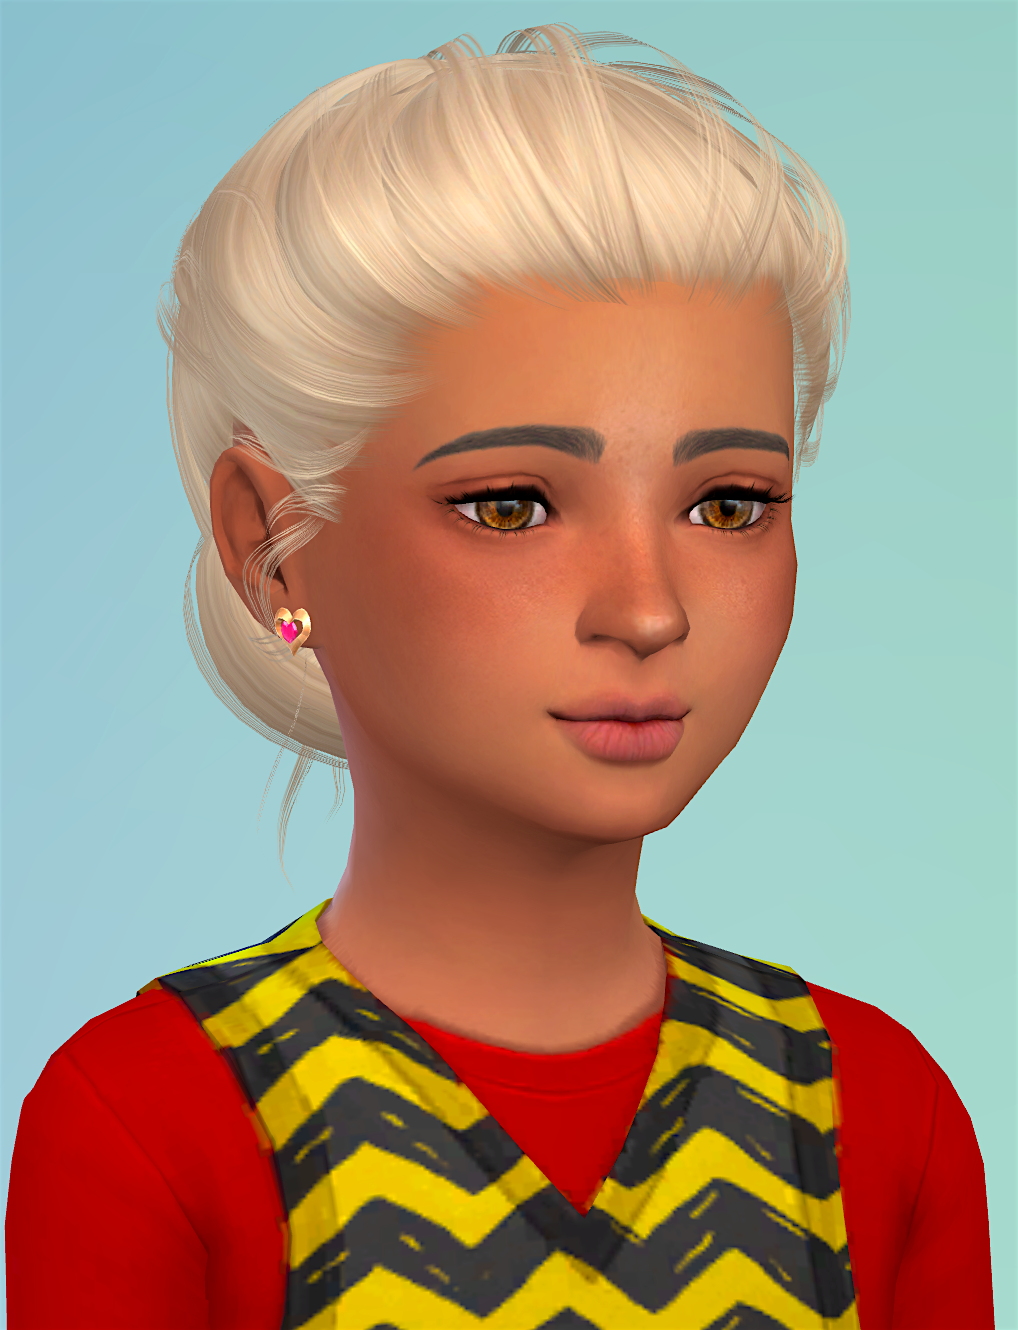 Sims 4 Child Hair Cc Pack Retdh